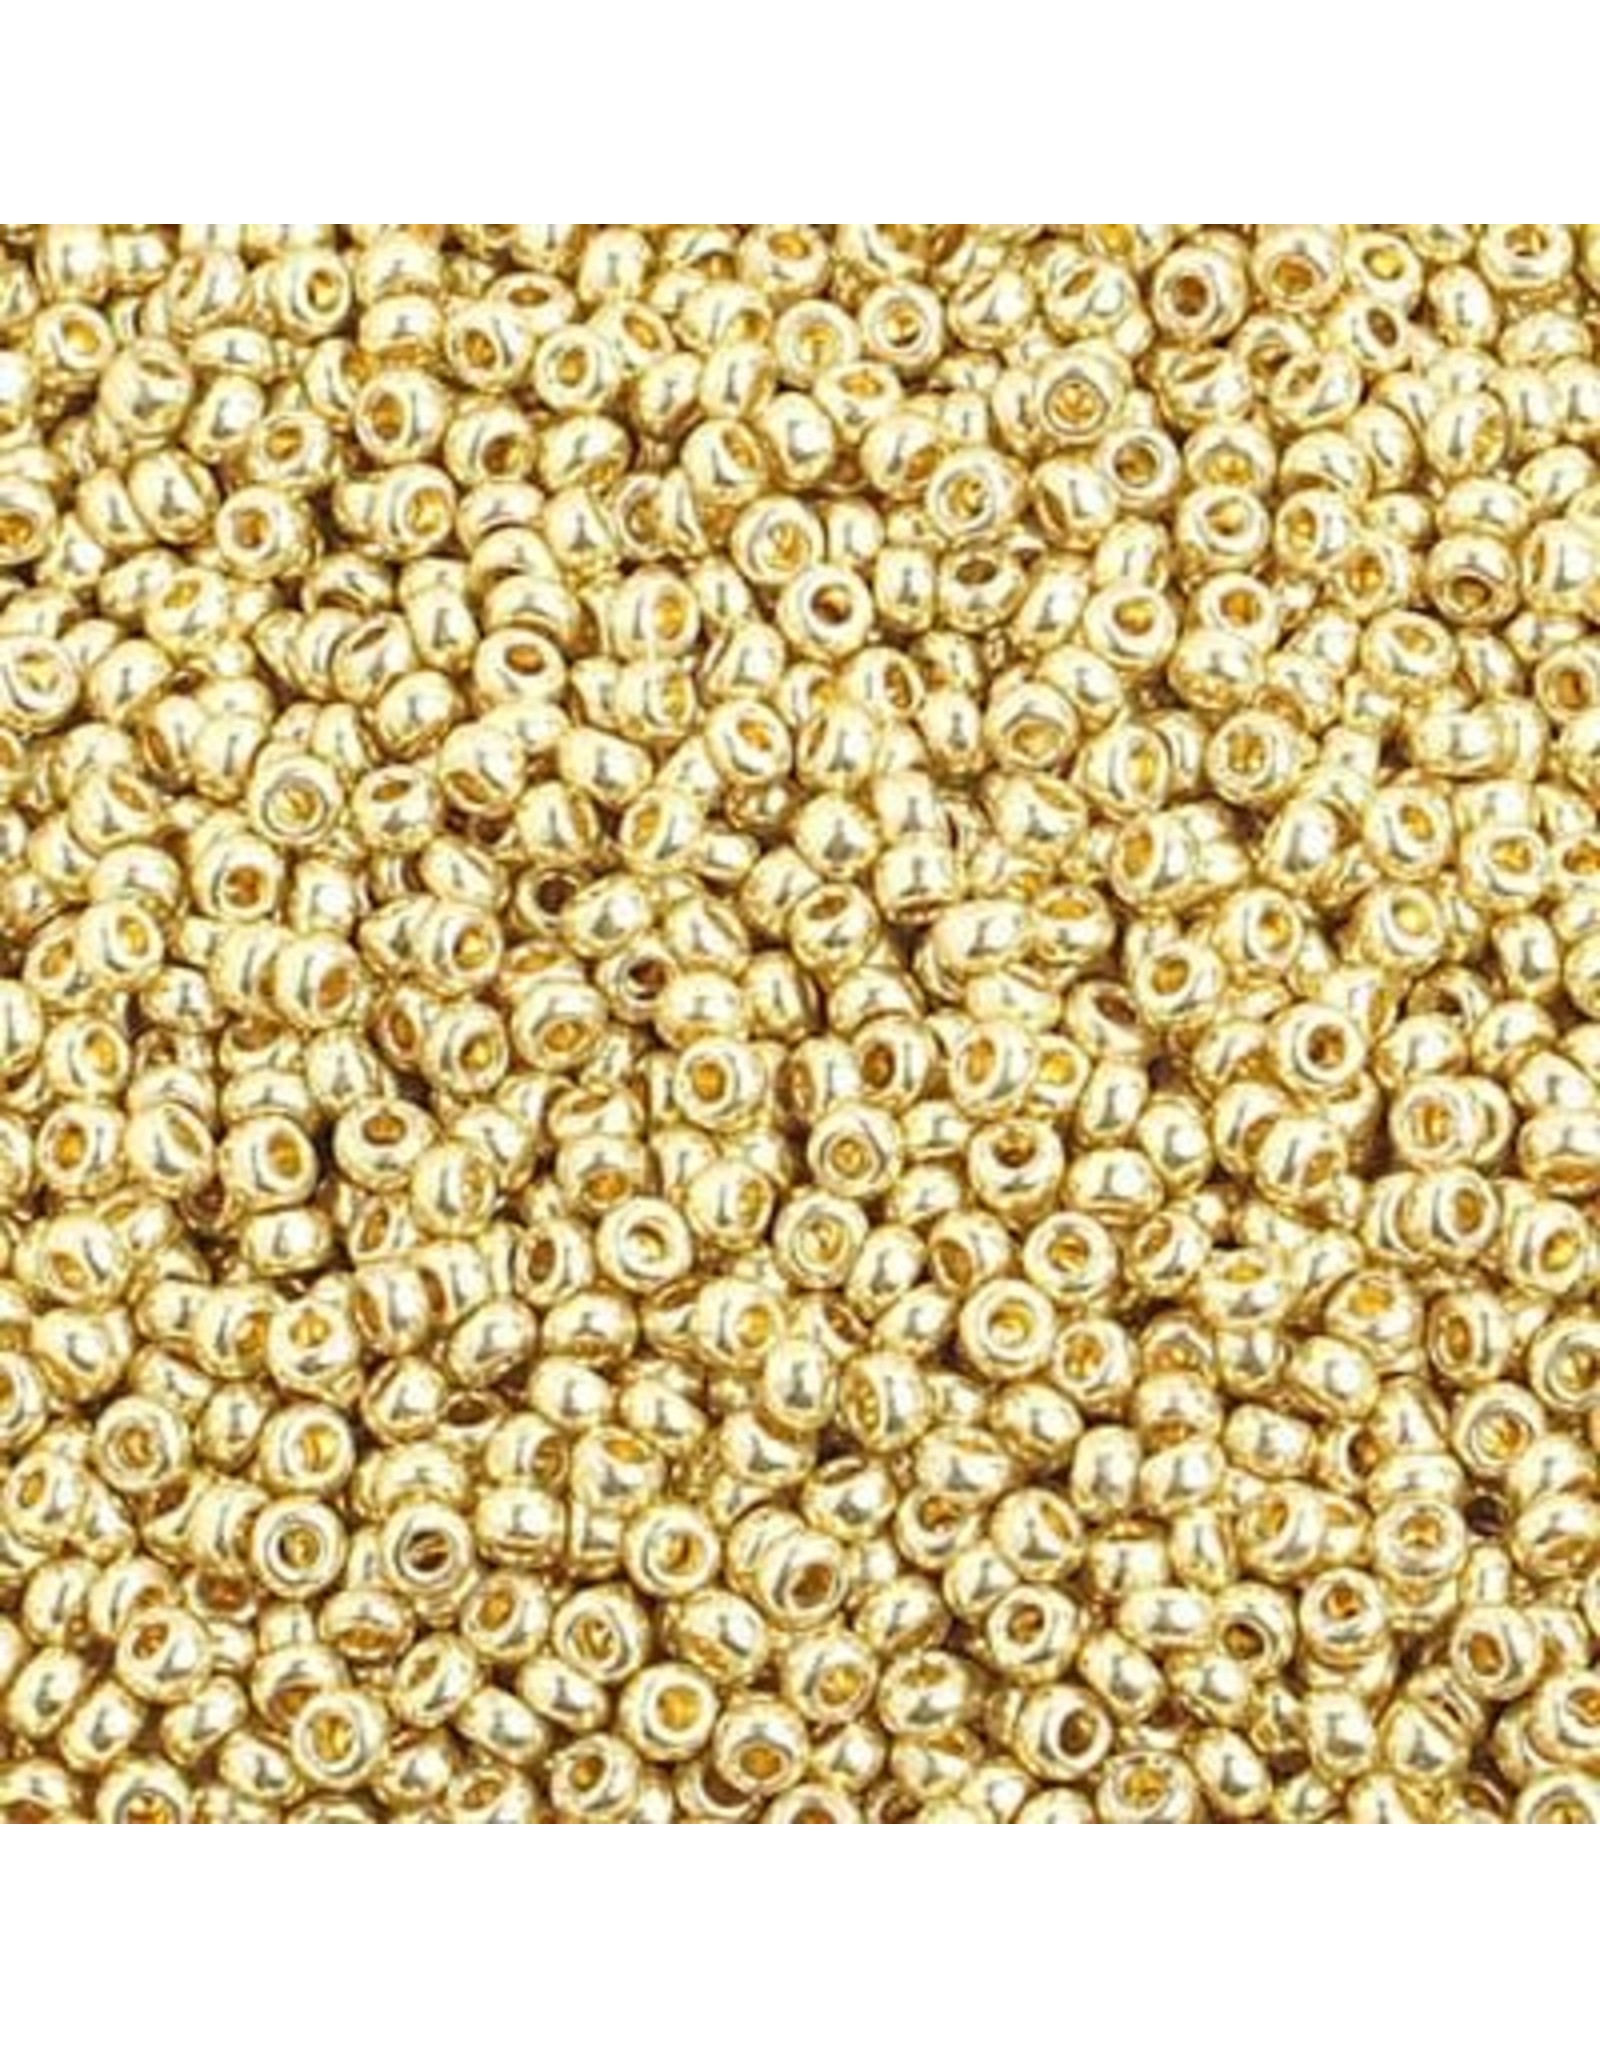 Czech *40026 10  Seed 10g  Light Gold Metallic s/g